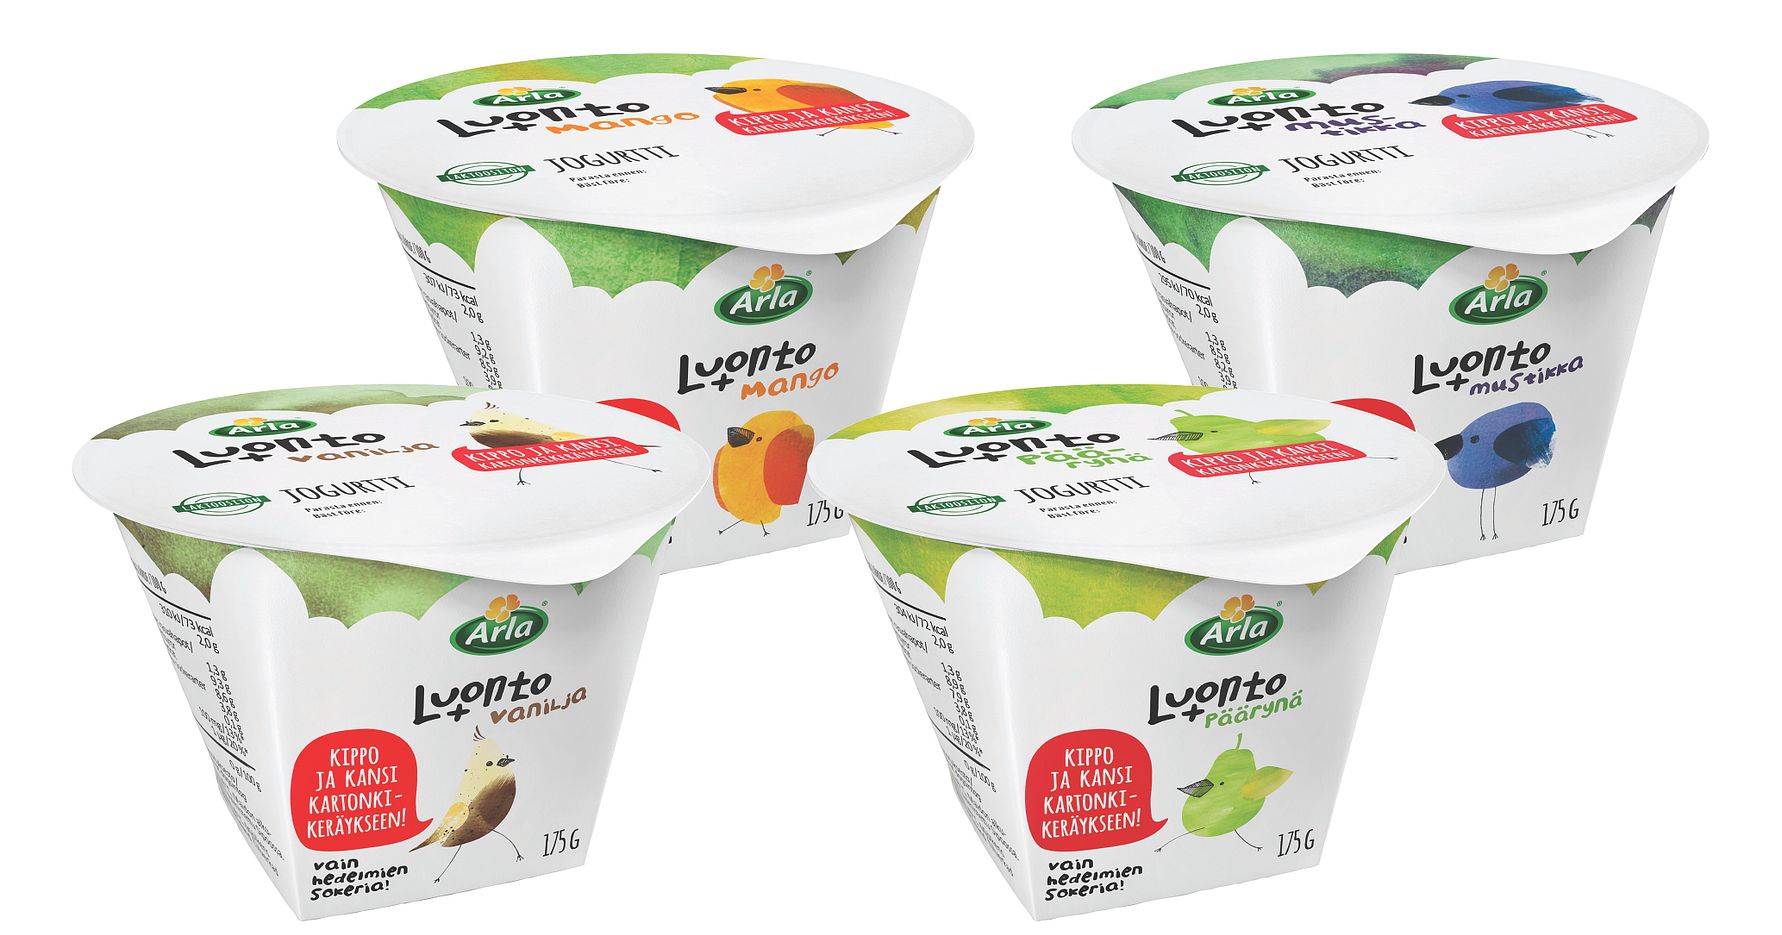 Arla haluaa muuttaa maailmaa pakkaus kerrallaan – tuo kartonkiset jogurttipikarit kauppoihin ensimmäisenä Suomessa